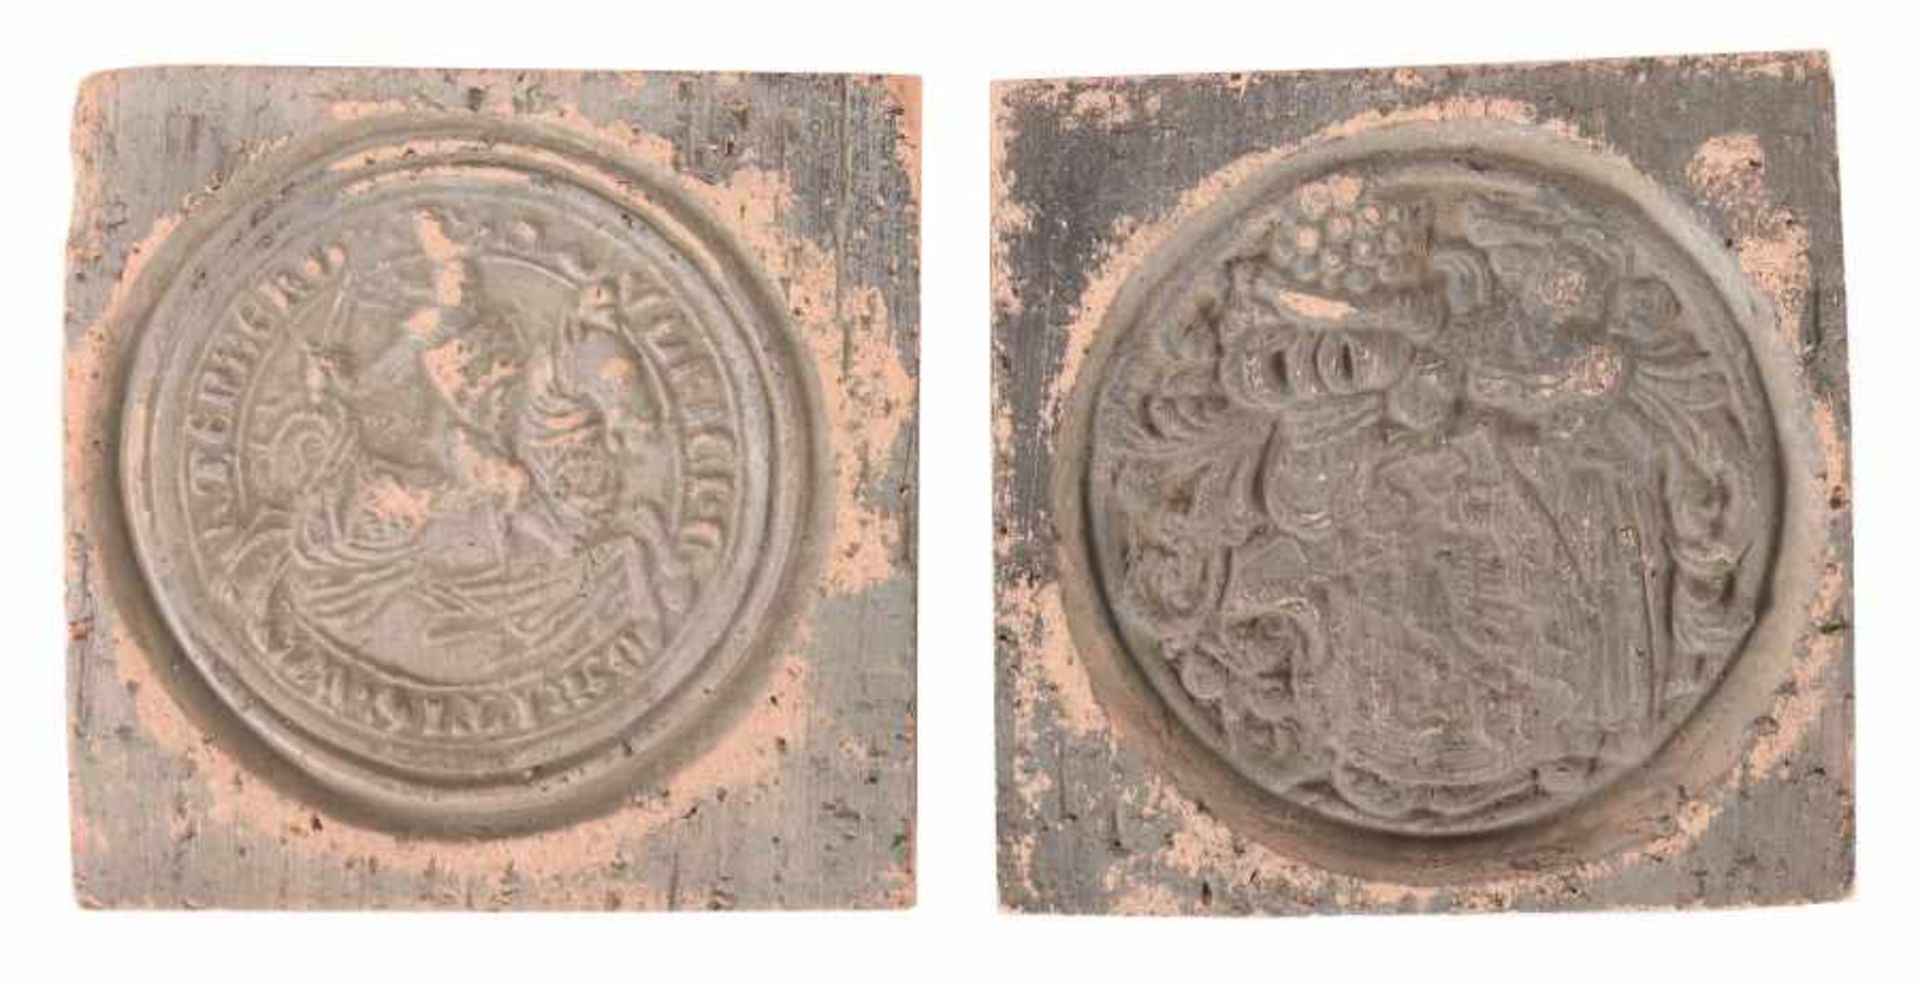 2 Abformungen historischer SiegelRenaissance-Motive, Abformungen wohl aus dem 18. oder 19. Jh. (eine